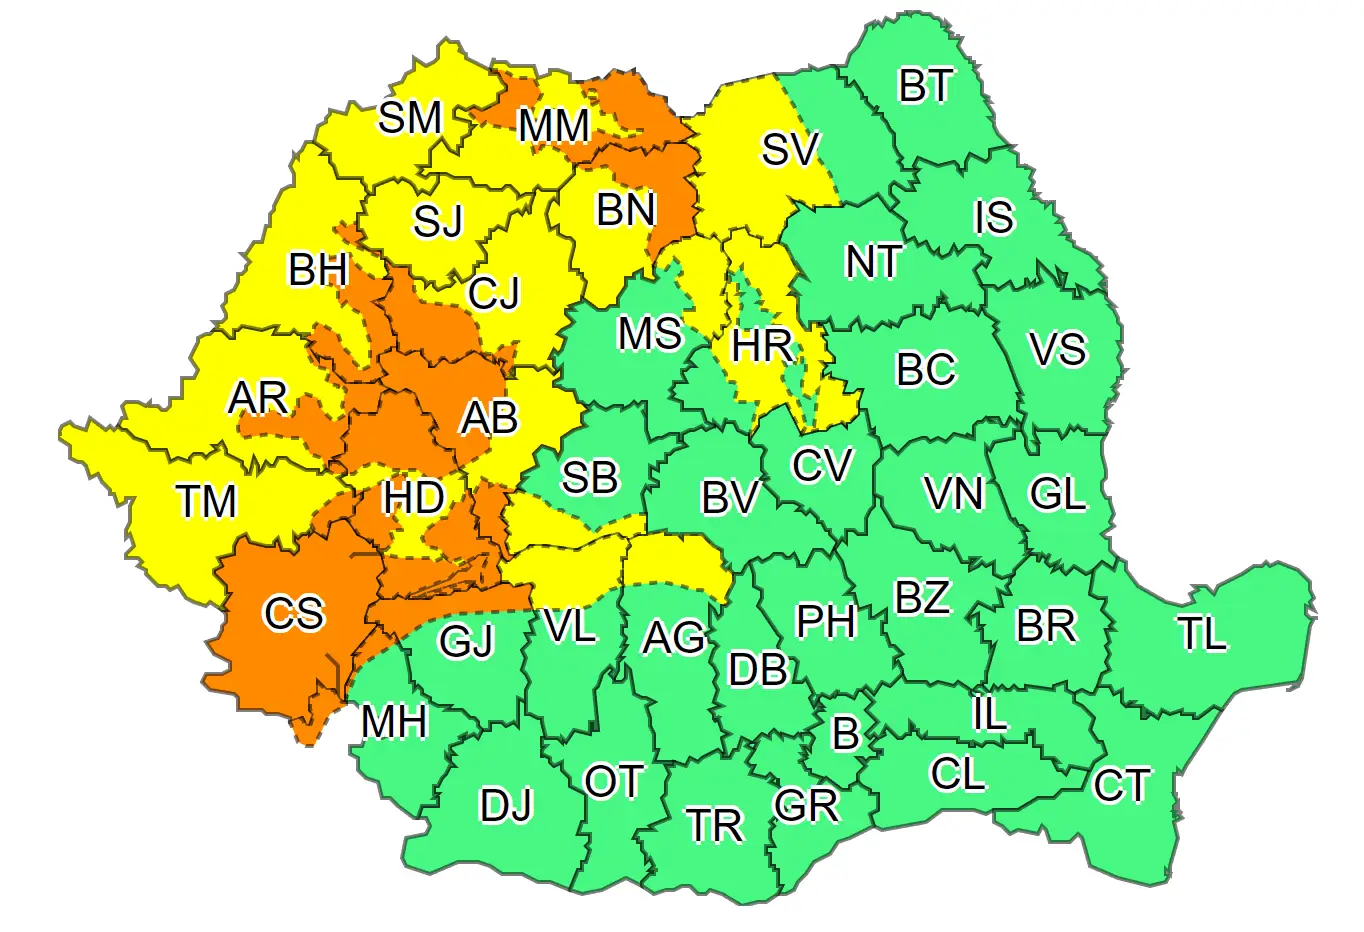 ÚLTIMA HORA Alertas meteorológicas ANM Rumania El mapa completo